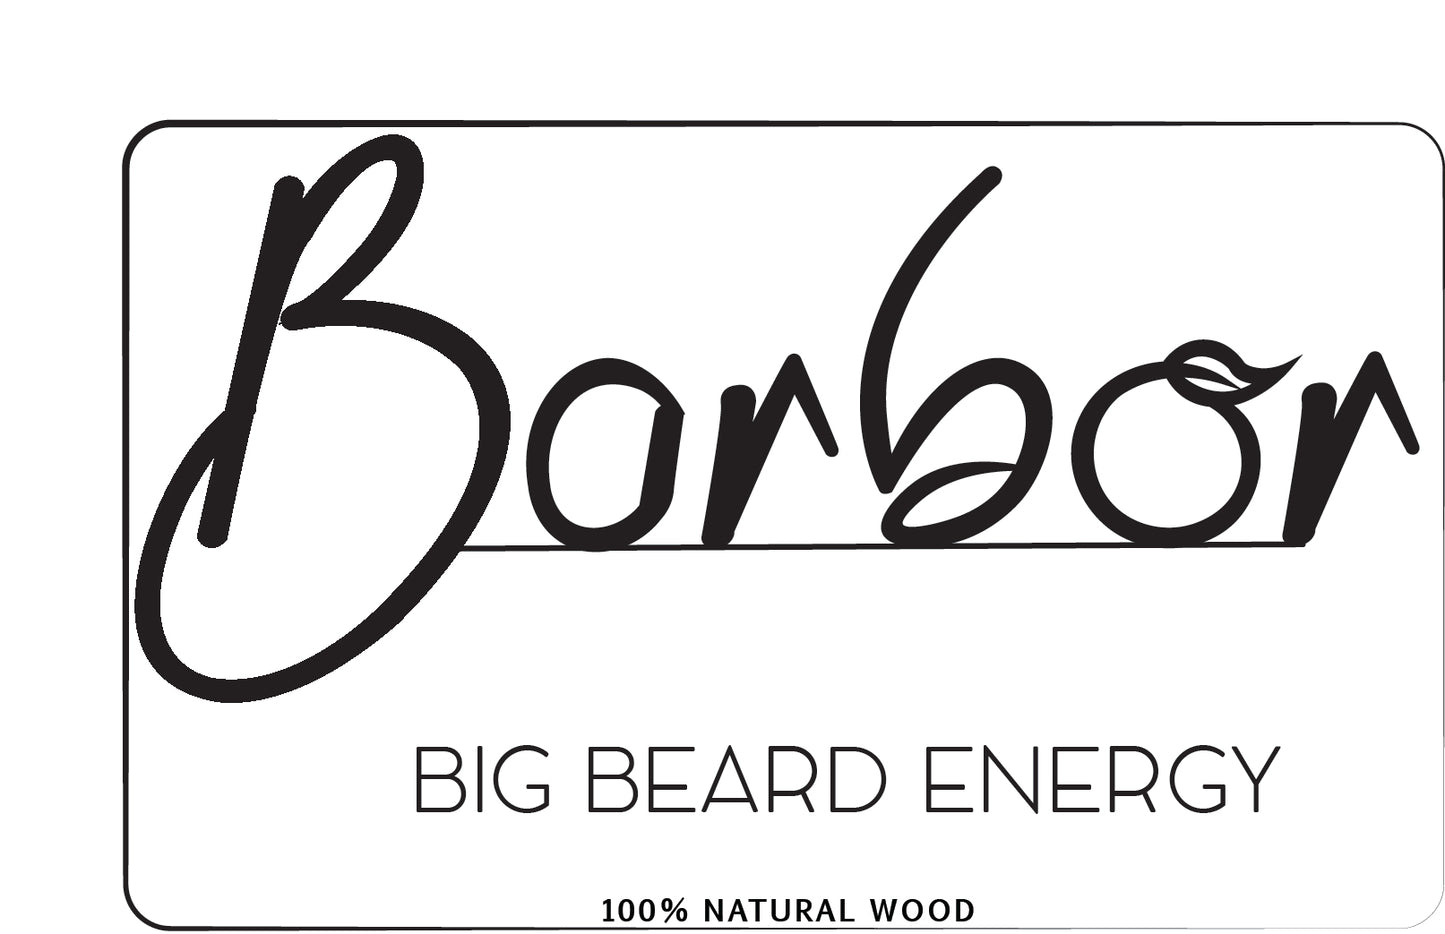 Barbor - Handmade Wooden Comb